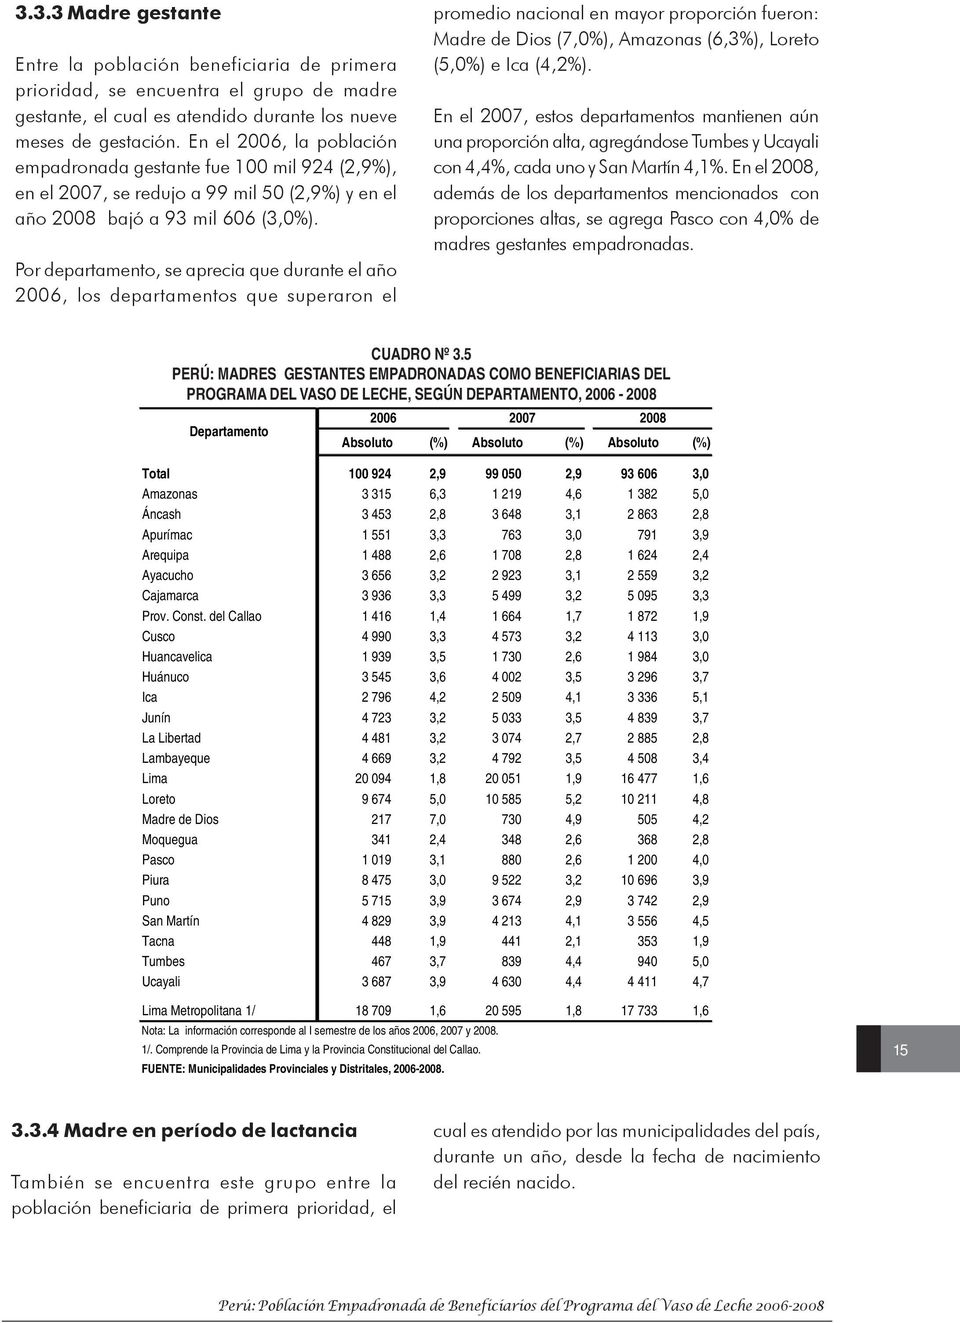 Por departamento, se aprecia que durante el año 2006, los departamentos que superaron el promedio nacional en mayor proporción fueron: de Dios (7,0%), Amazonas (6,3%), Loreto (5,0%) e Ica (4,2%).